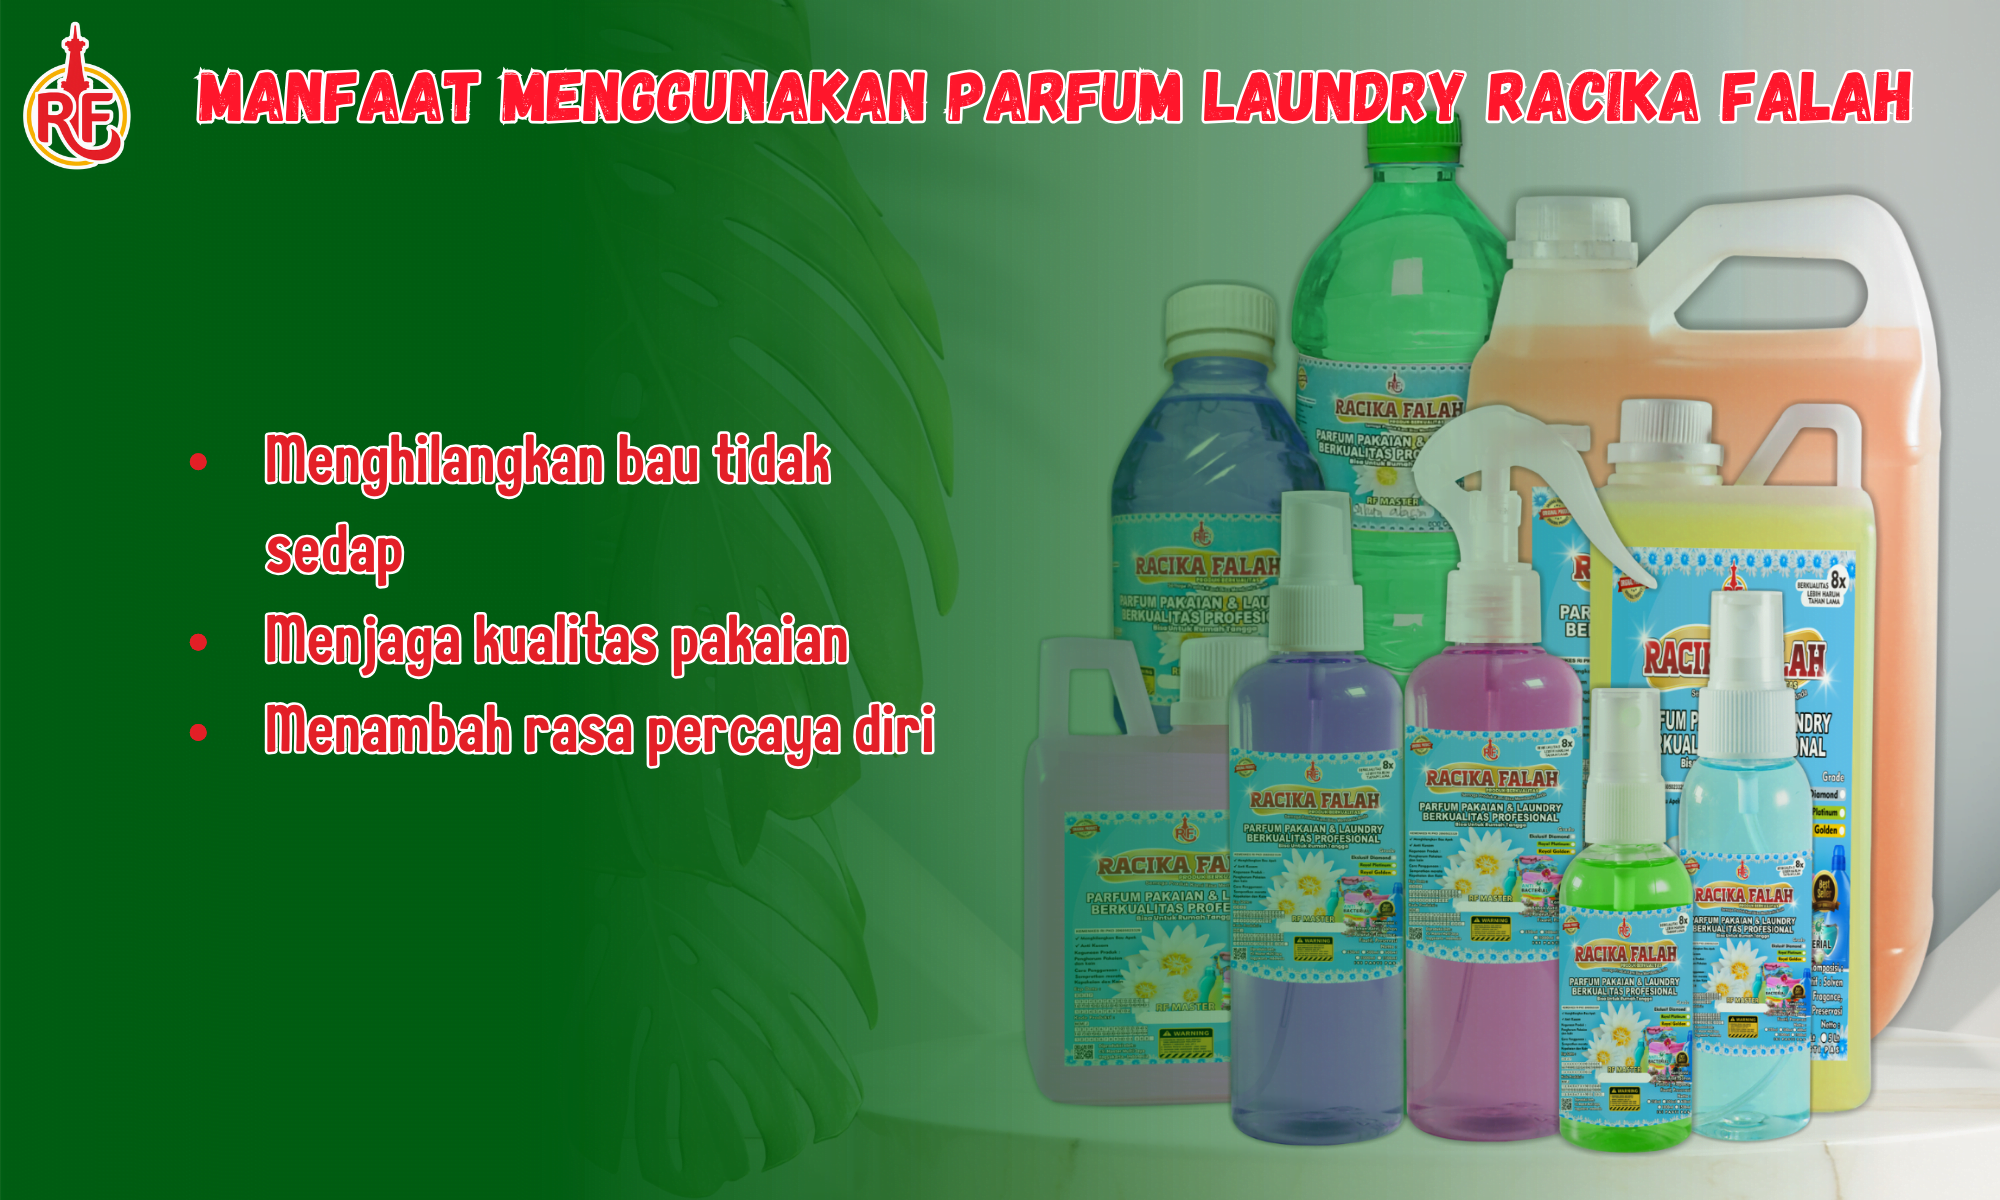 Manfaat Penggunaan Parfum Laundry